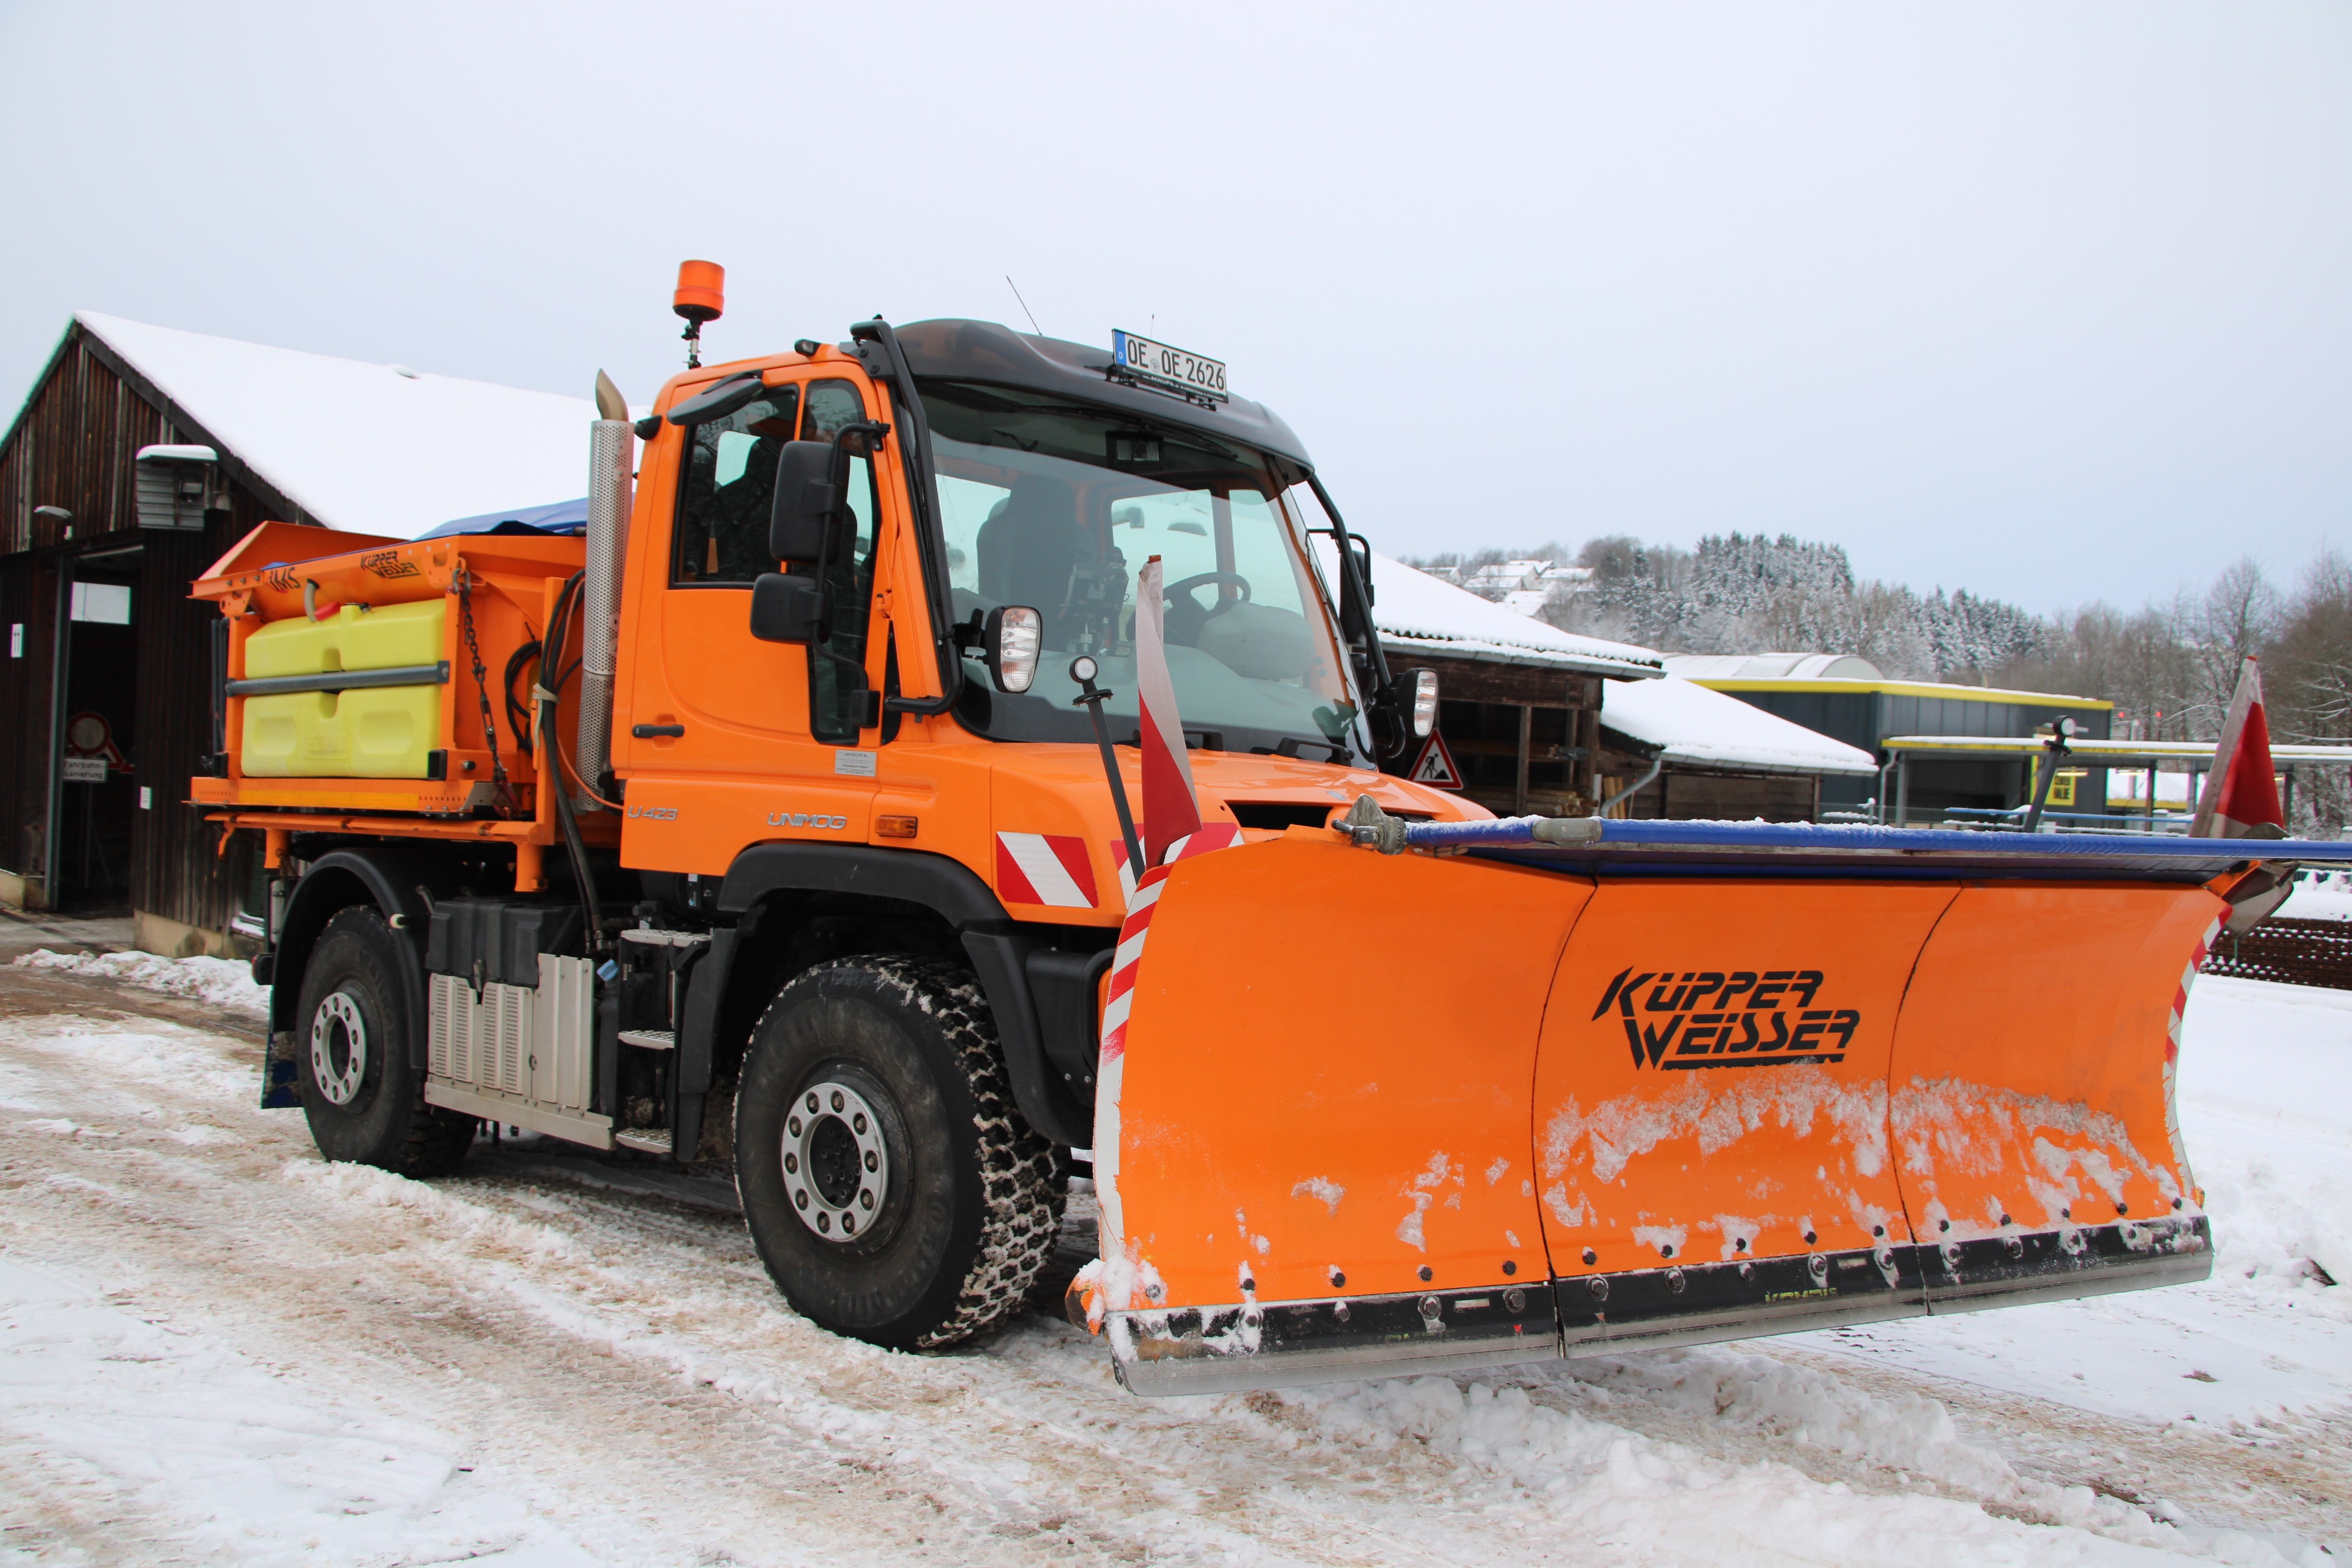 Unterwegs mit dem Winterdienst: LokalPlus ist eine Tour im orangenen Streu- und Räumfahrzeug mitgefahren. von Lorena Klein